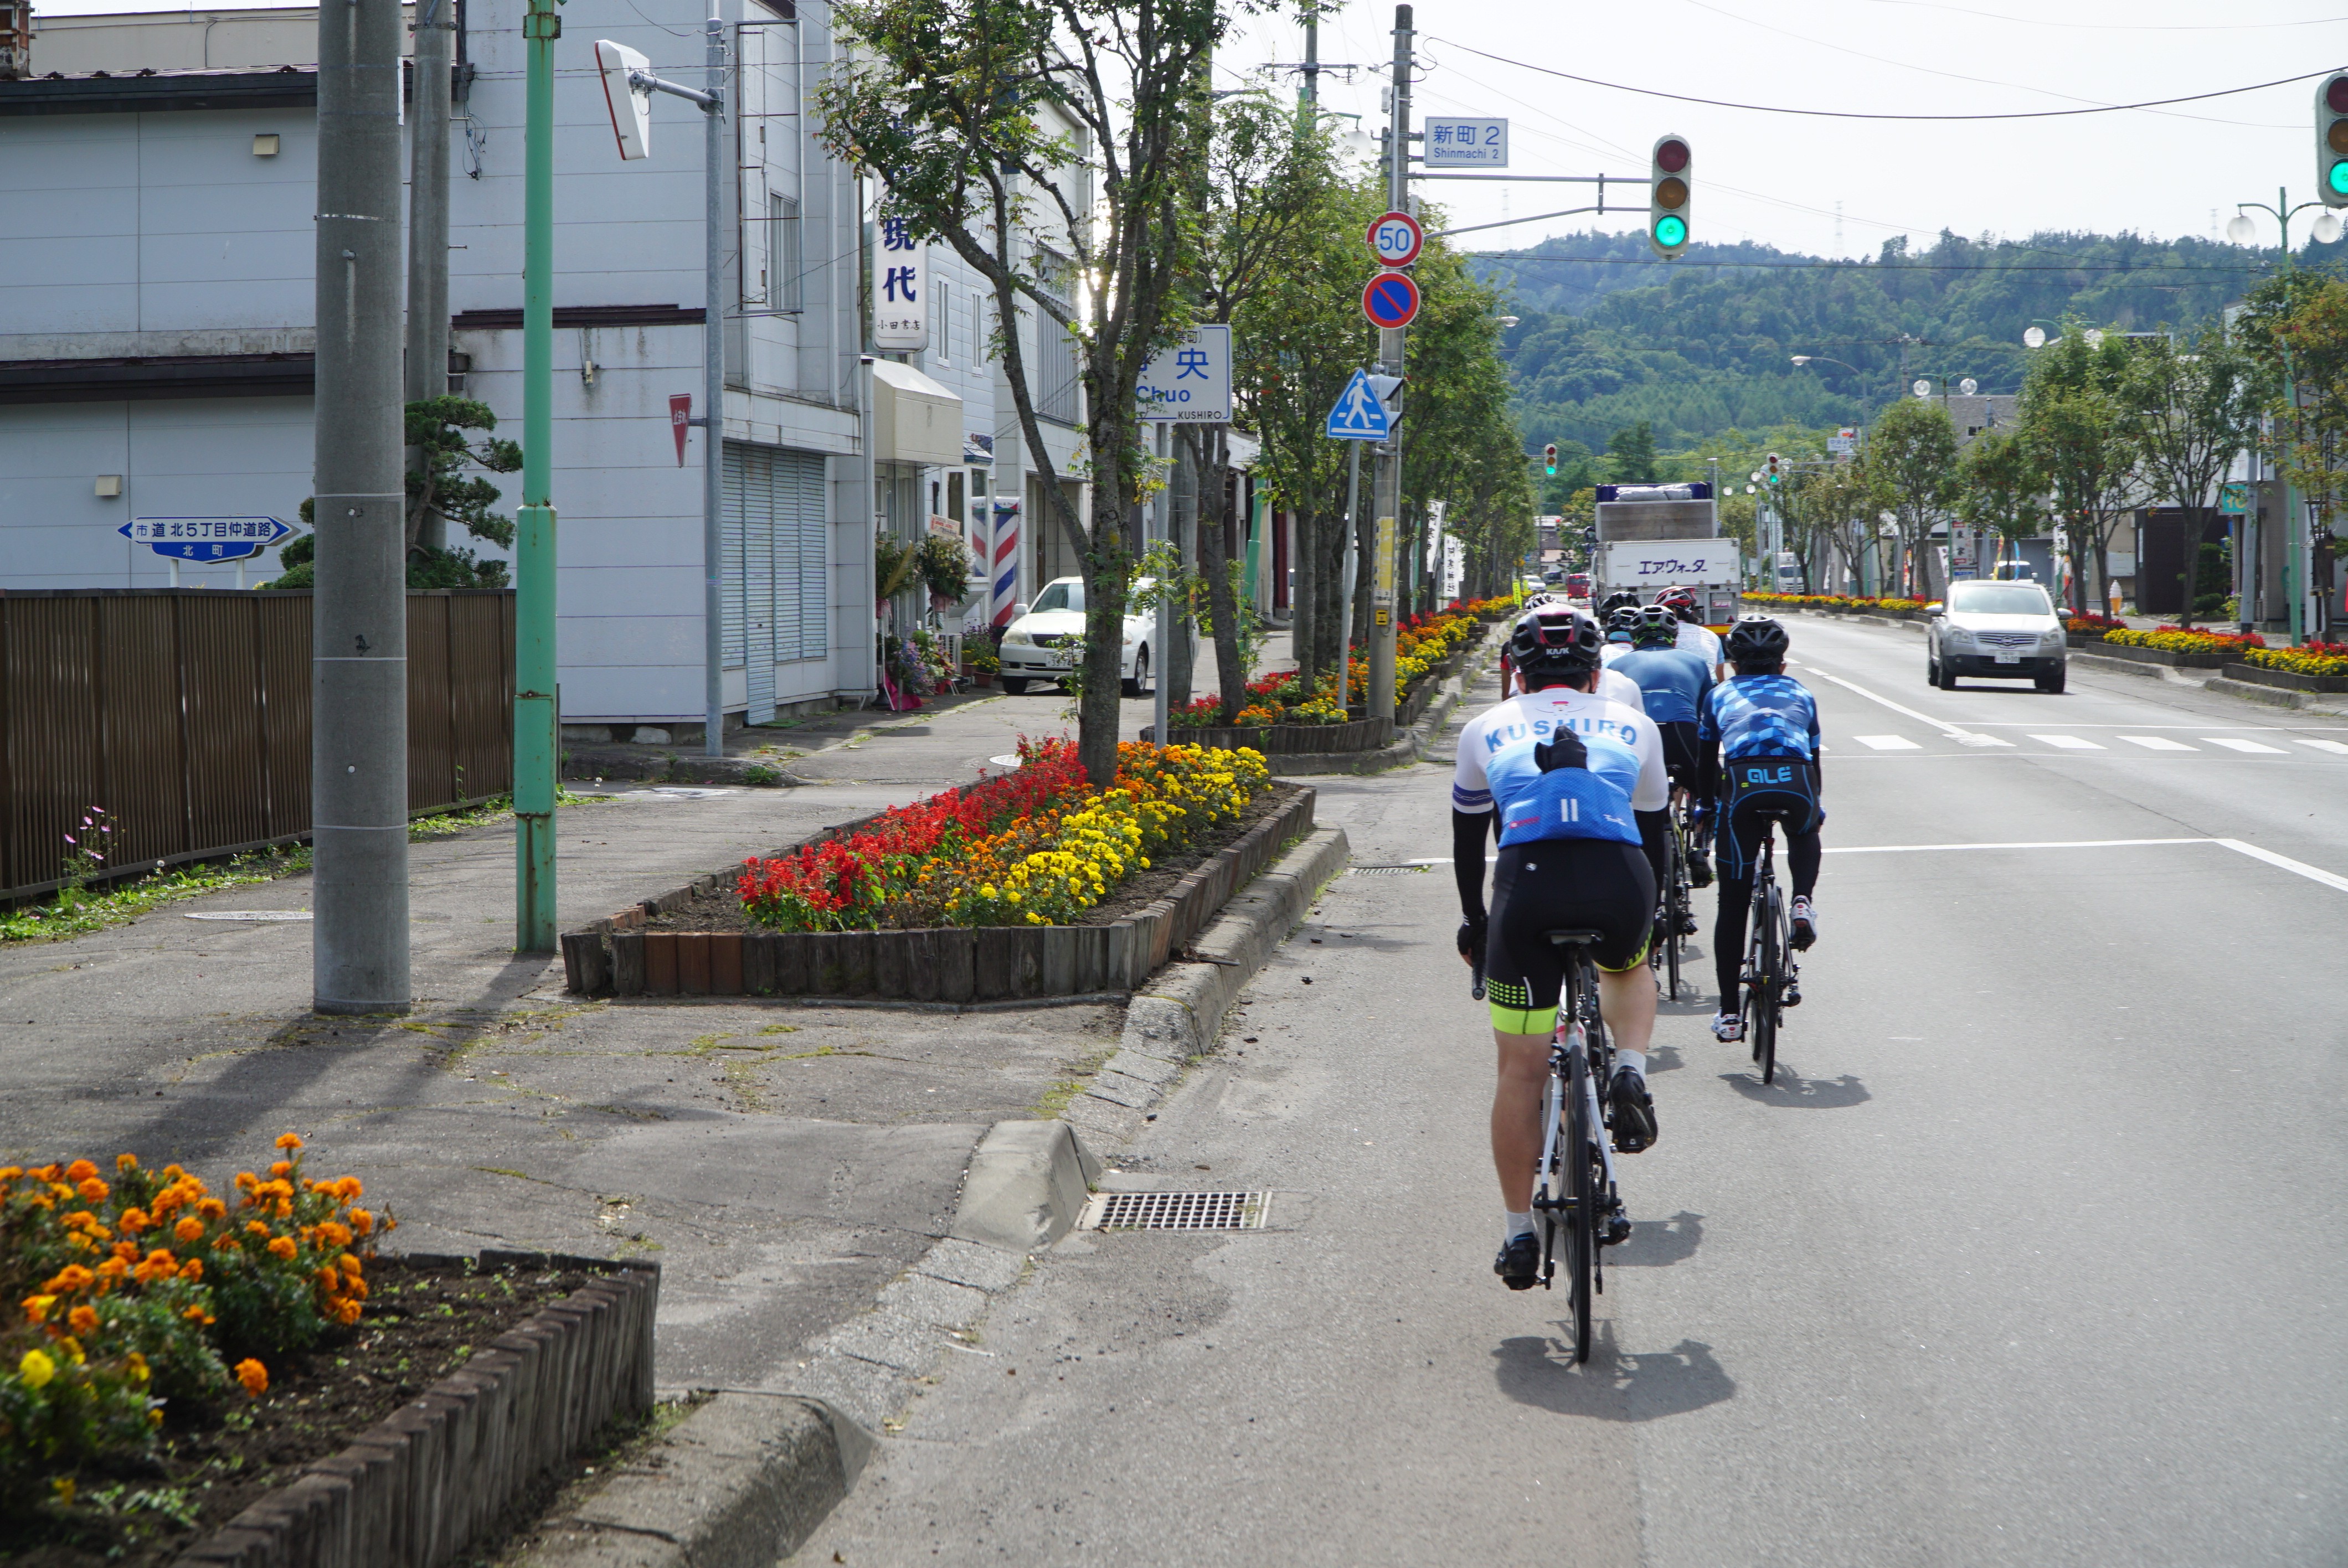 單車旅行 日本東北海道三湖騎旅釧路溼原5日 世界運動 動感旅行